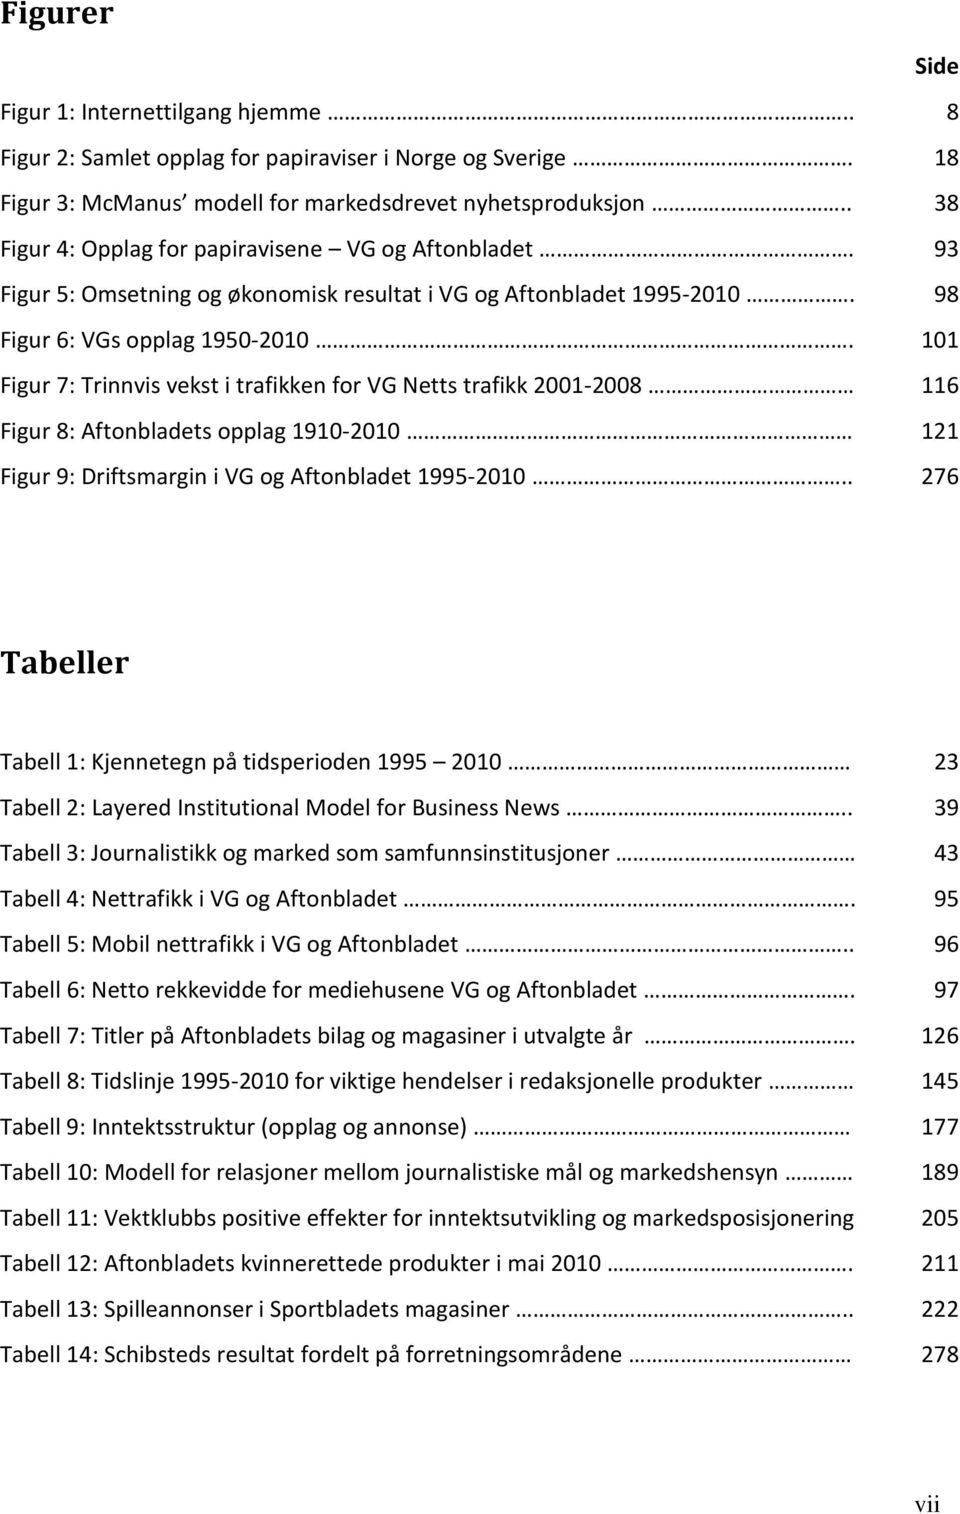 Figur 7: Trinnvis vekst i trafikken for VG Netts trafikk 2001-2008 Figur 8: Aftonbladets opplag 1910-2010 Figur 9: Driftsmargin i VG og Aftonbladet 1995-2010.